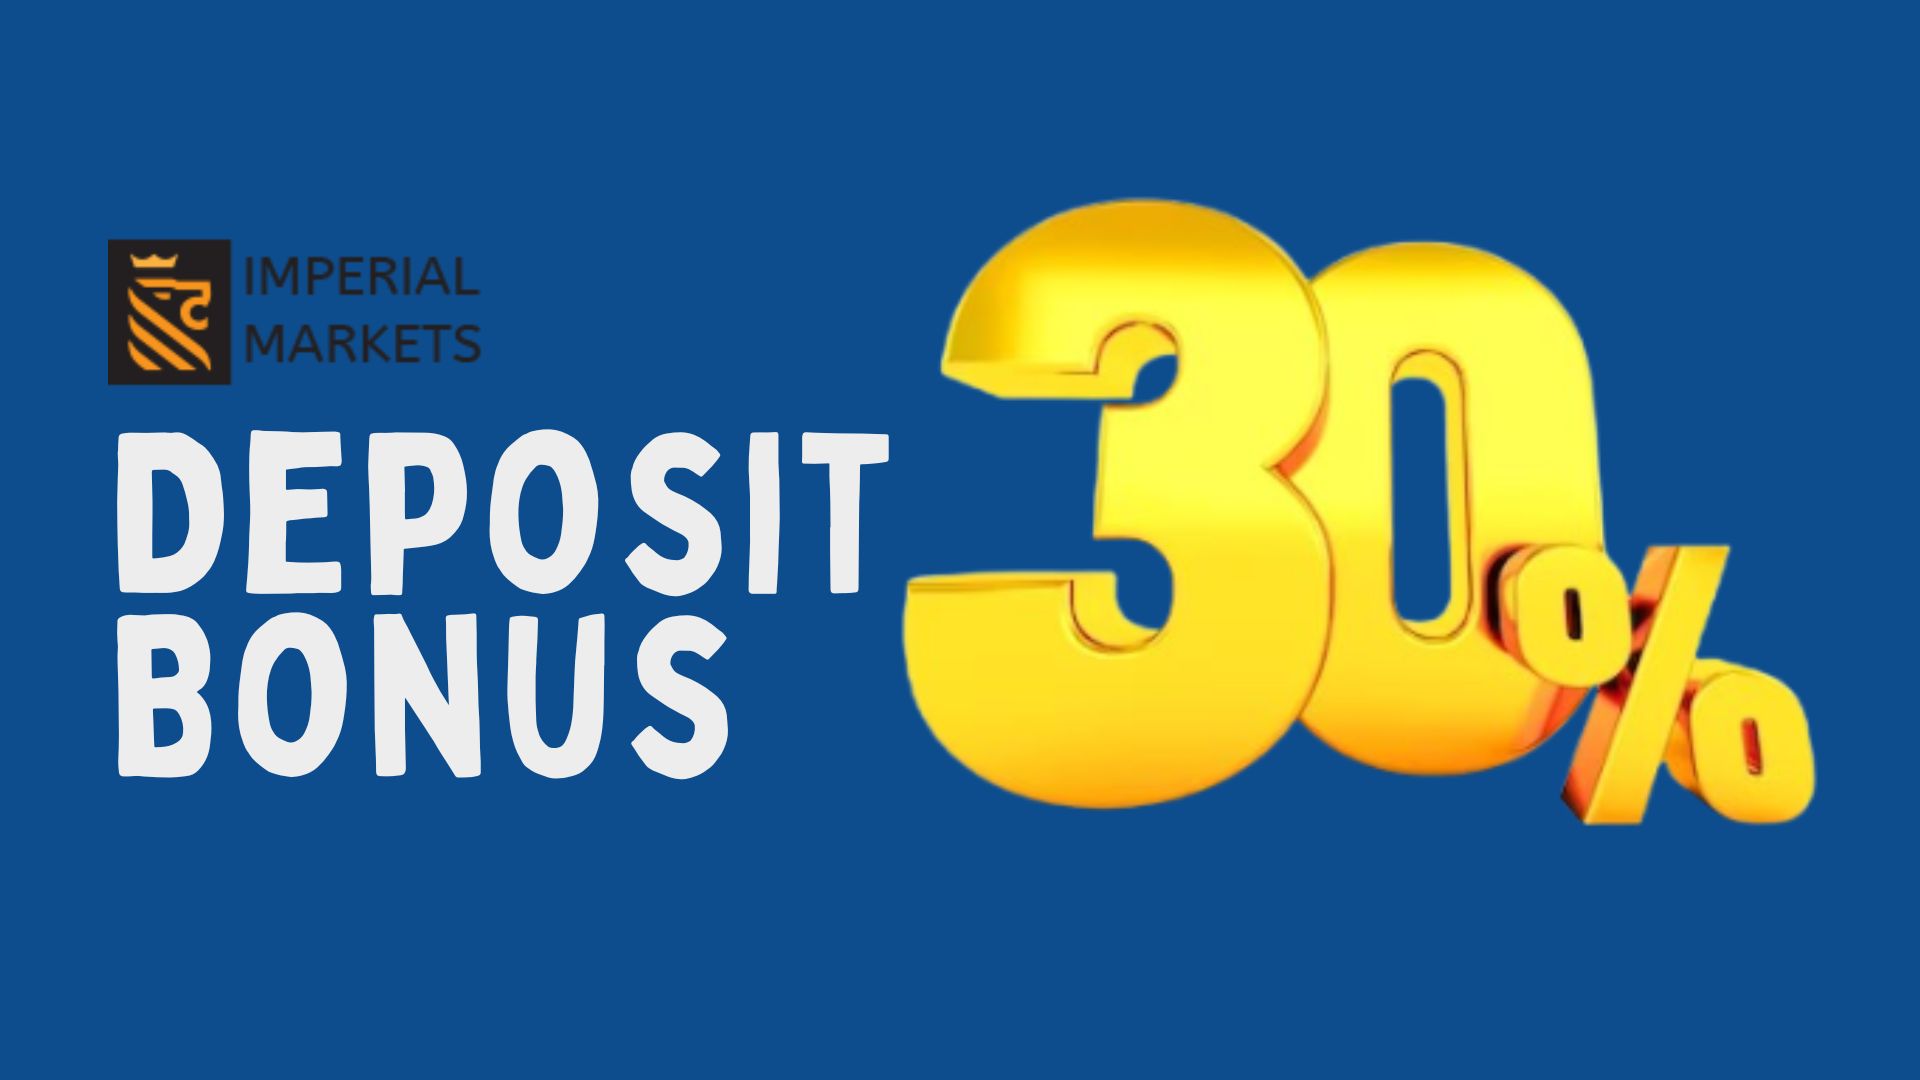 30% Deposit Bonus – Imperial Markets